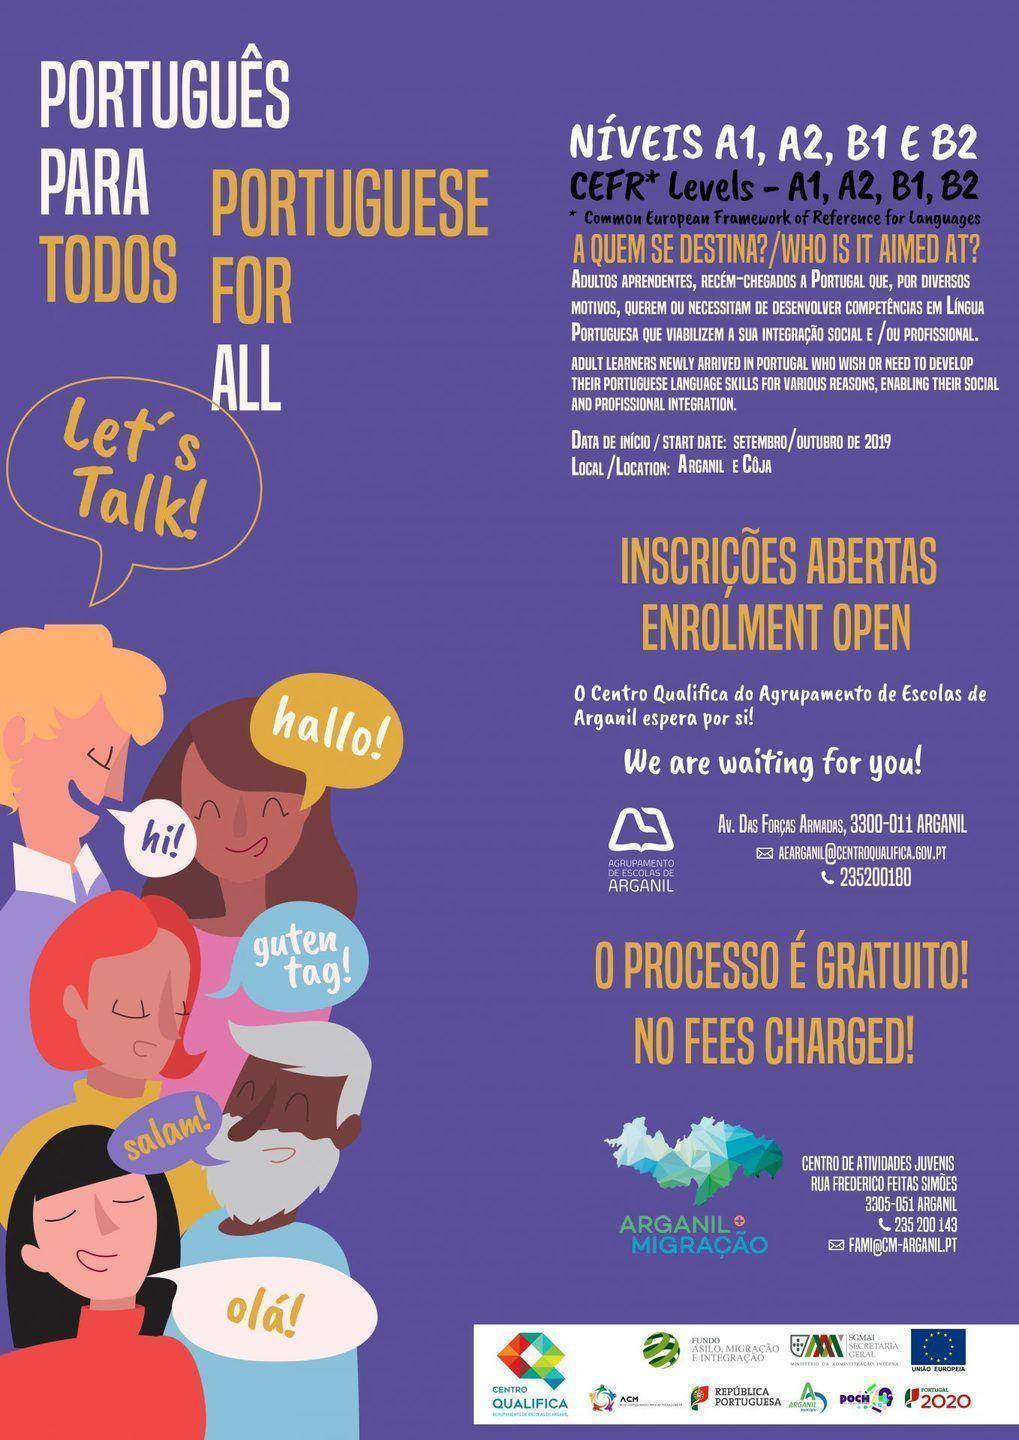 Planejamento de Aulas - Curso de Português para Estrangeiros